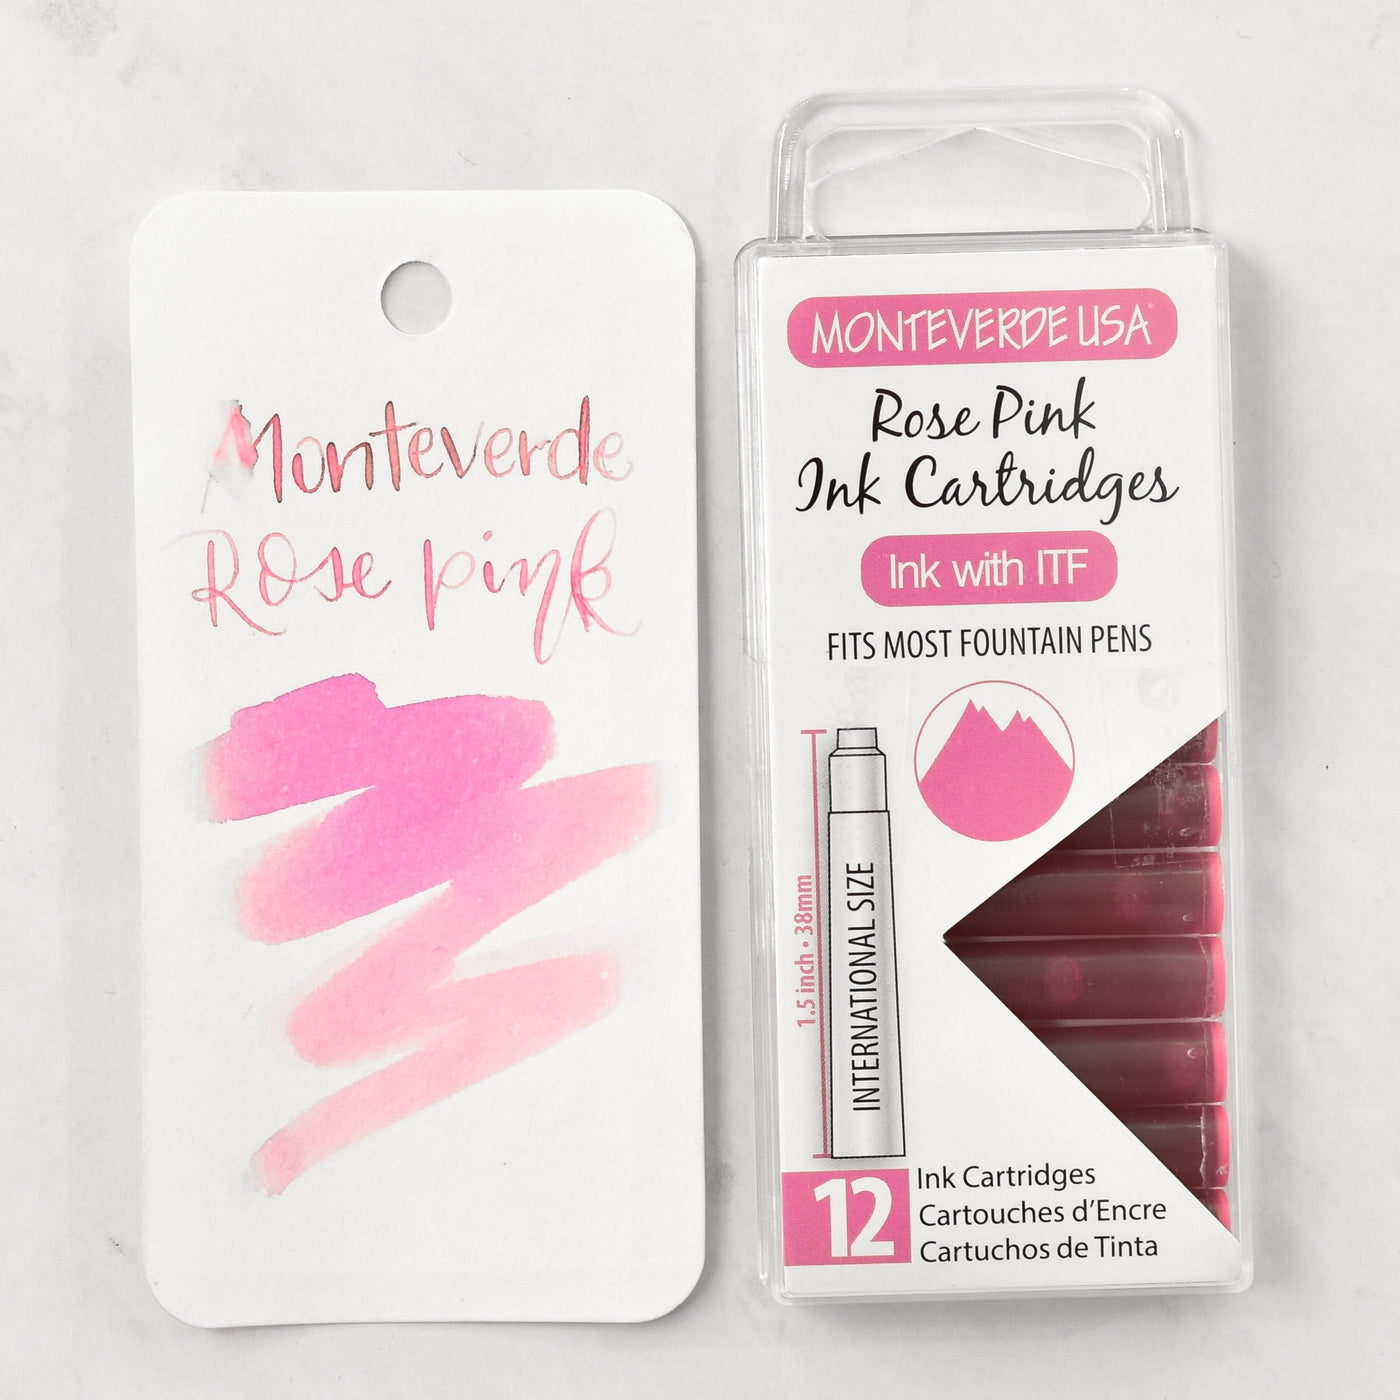 Monteverde Rose Pink Ink Cartridges